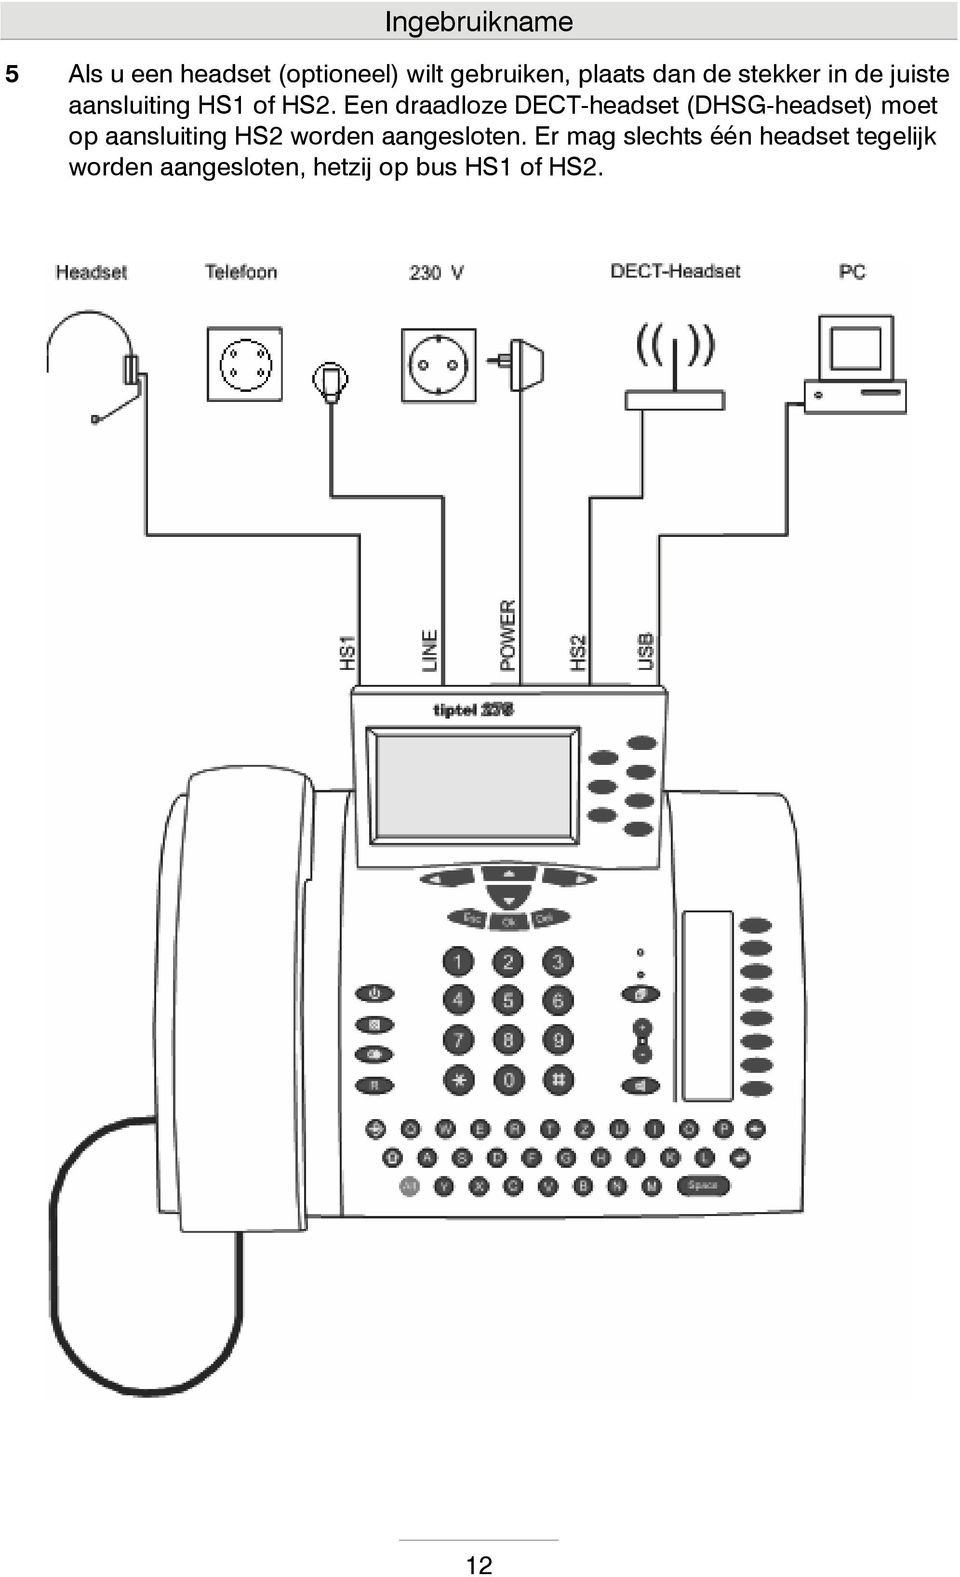 Een draadloze DECT-headset (DHSG-headset) moet op aansluiting HS2 worden